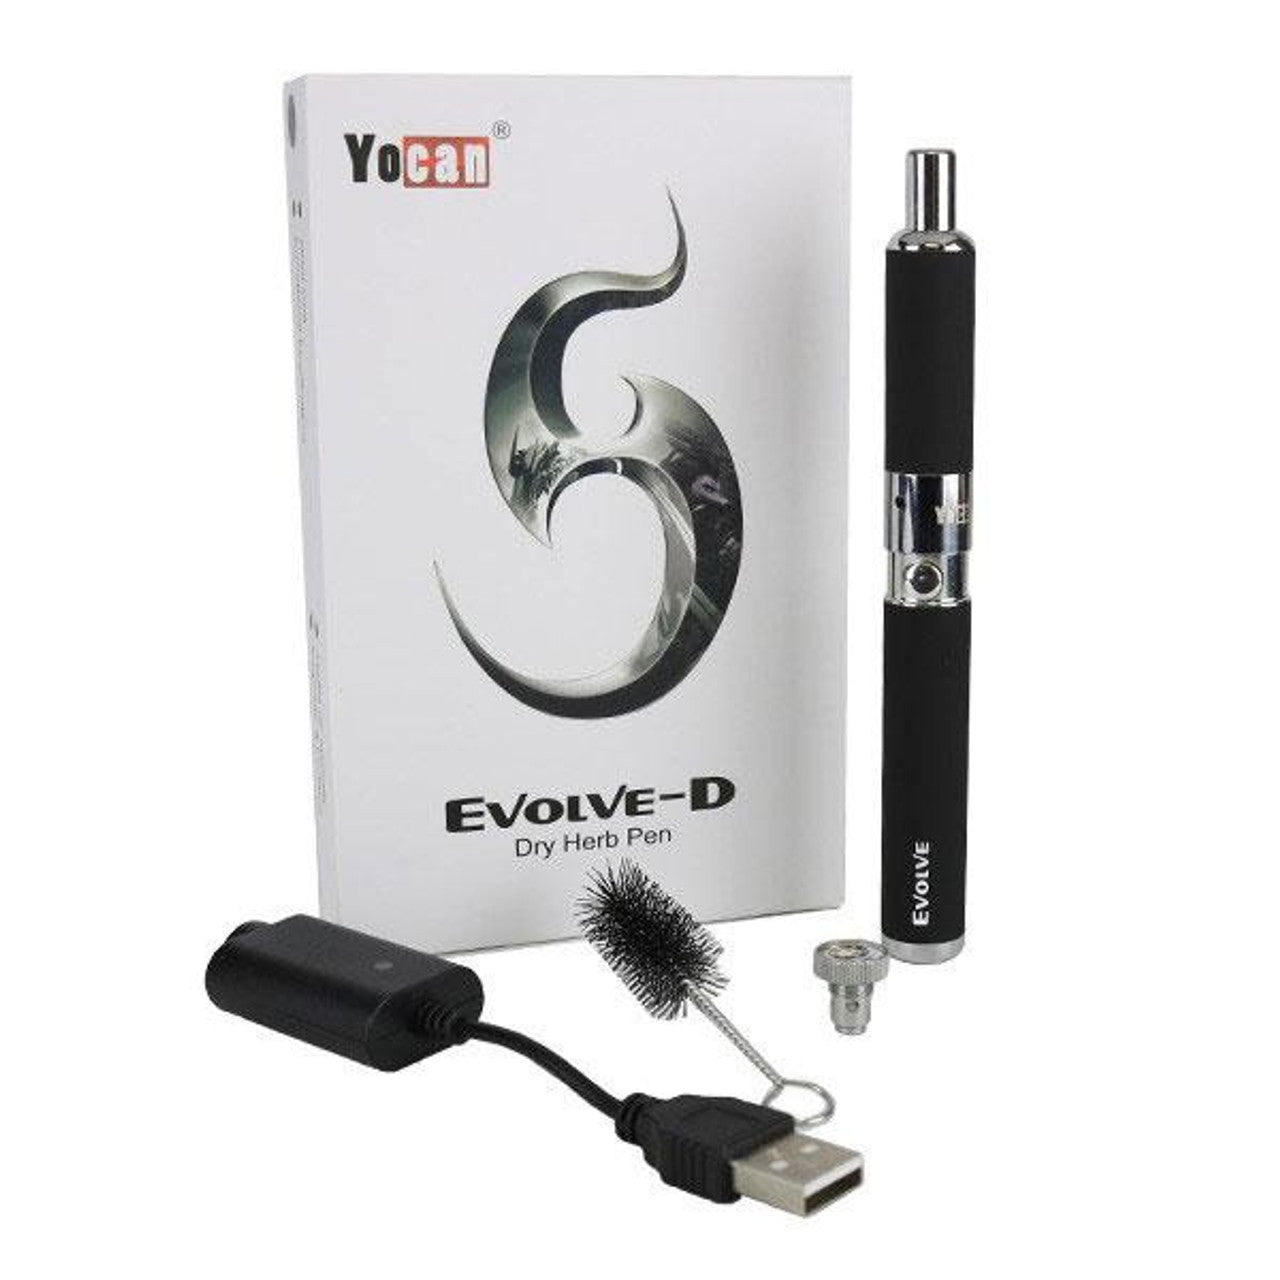 Yocan Evolve - D Dry Herb Pen